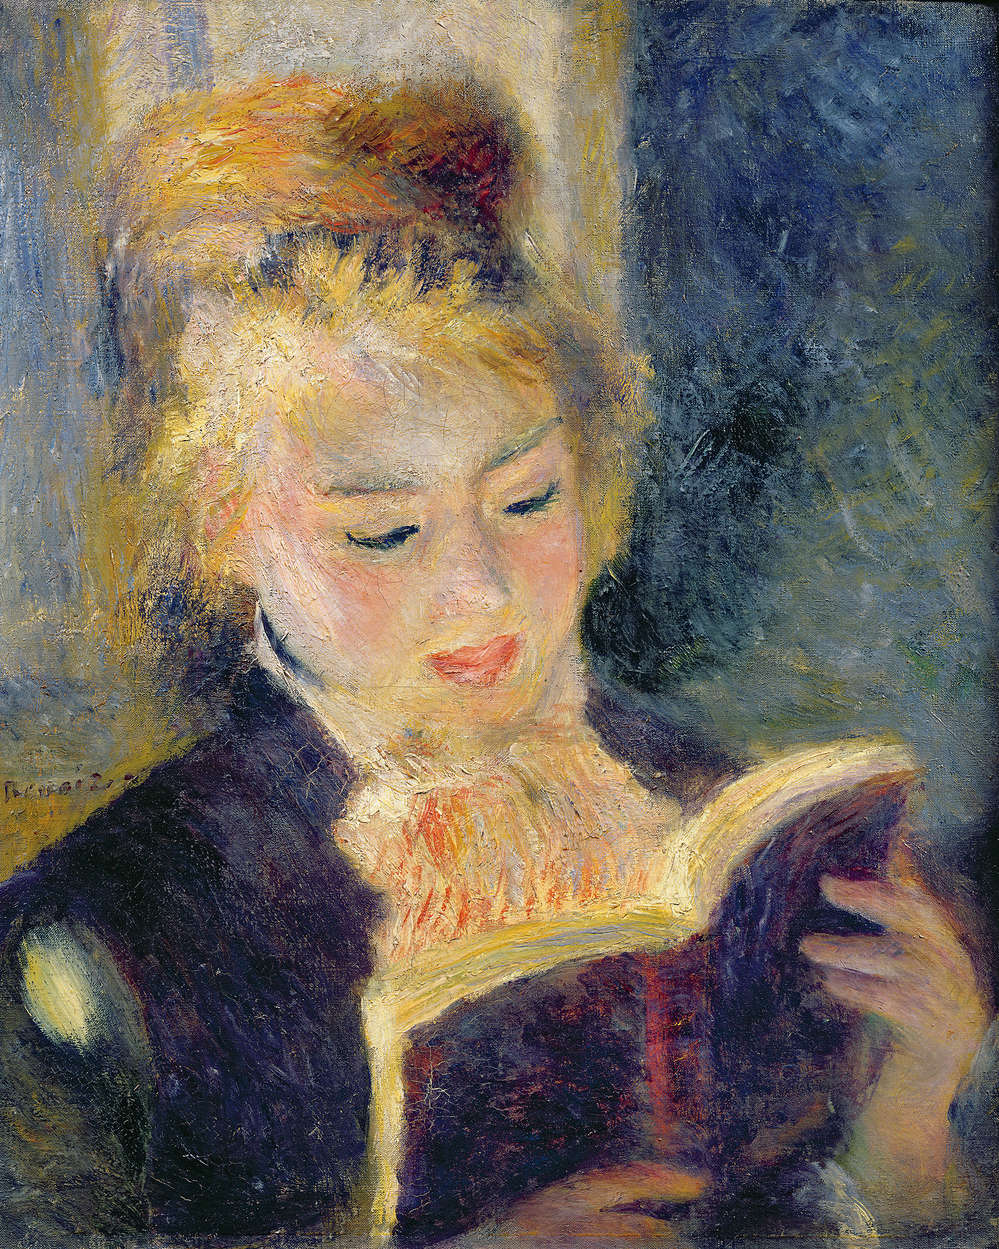             Papier peint "Jeune fille lisant" de Pierre Auguste Renoir
        